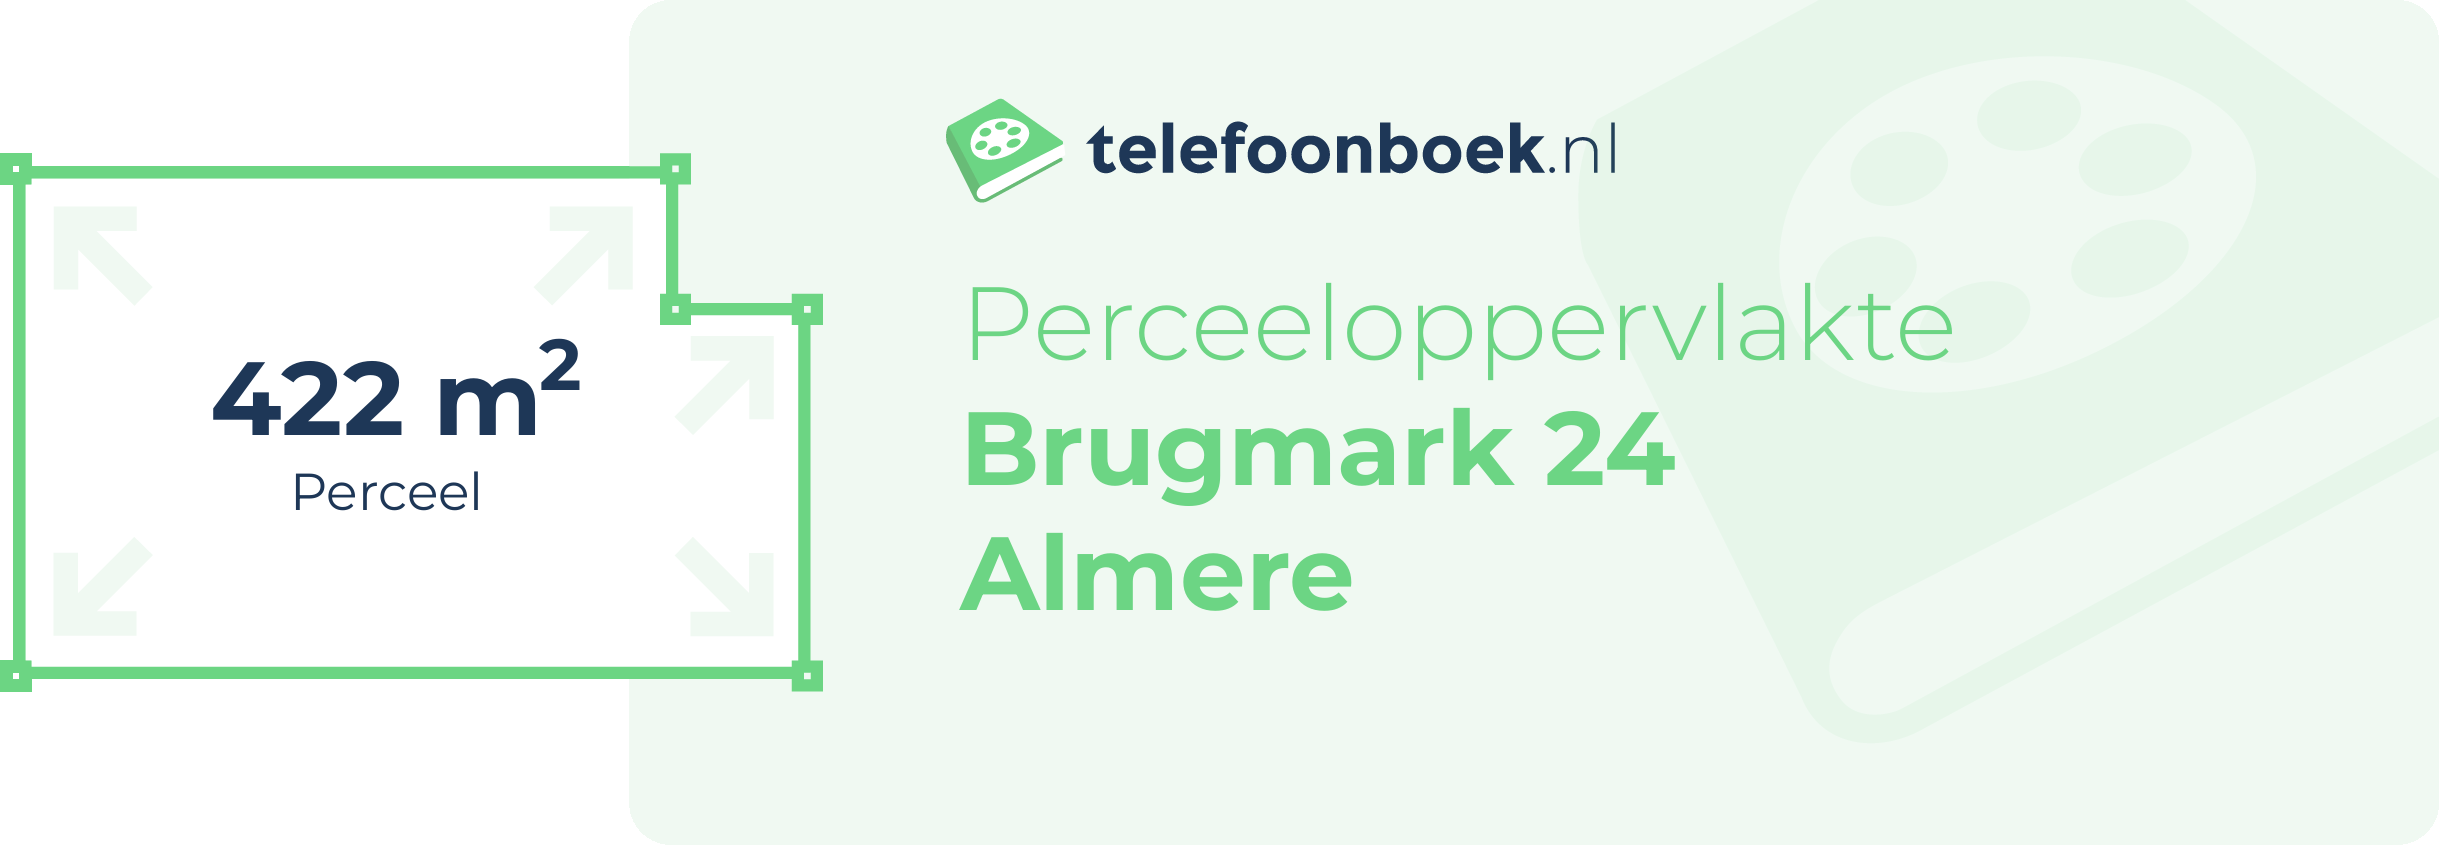 Perceeloppervlakte Brugmark 24 Almere